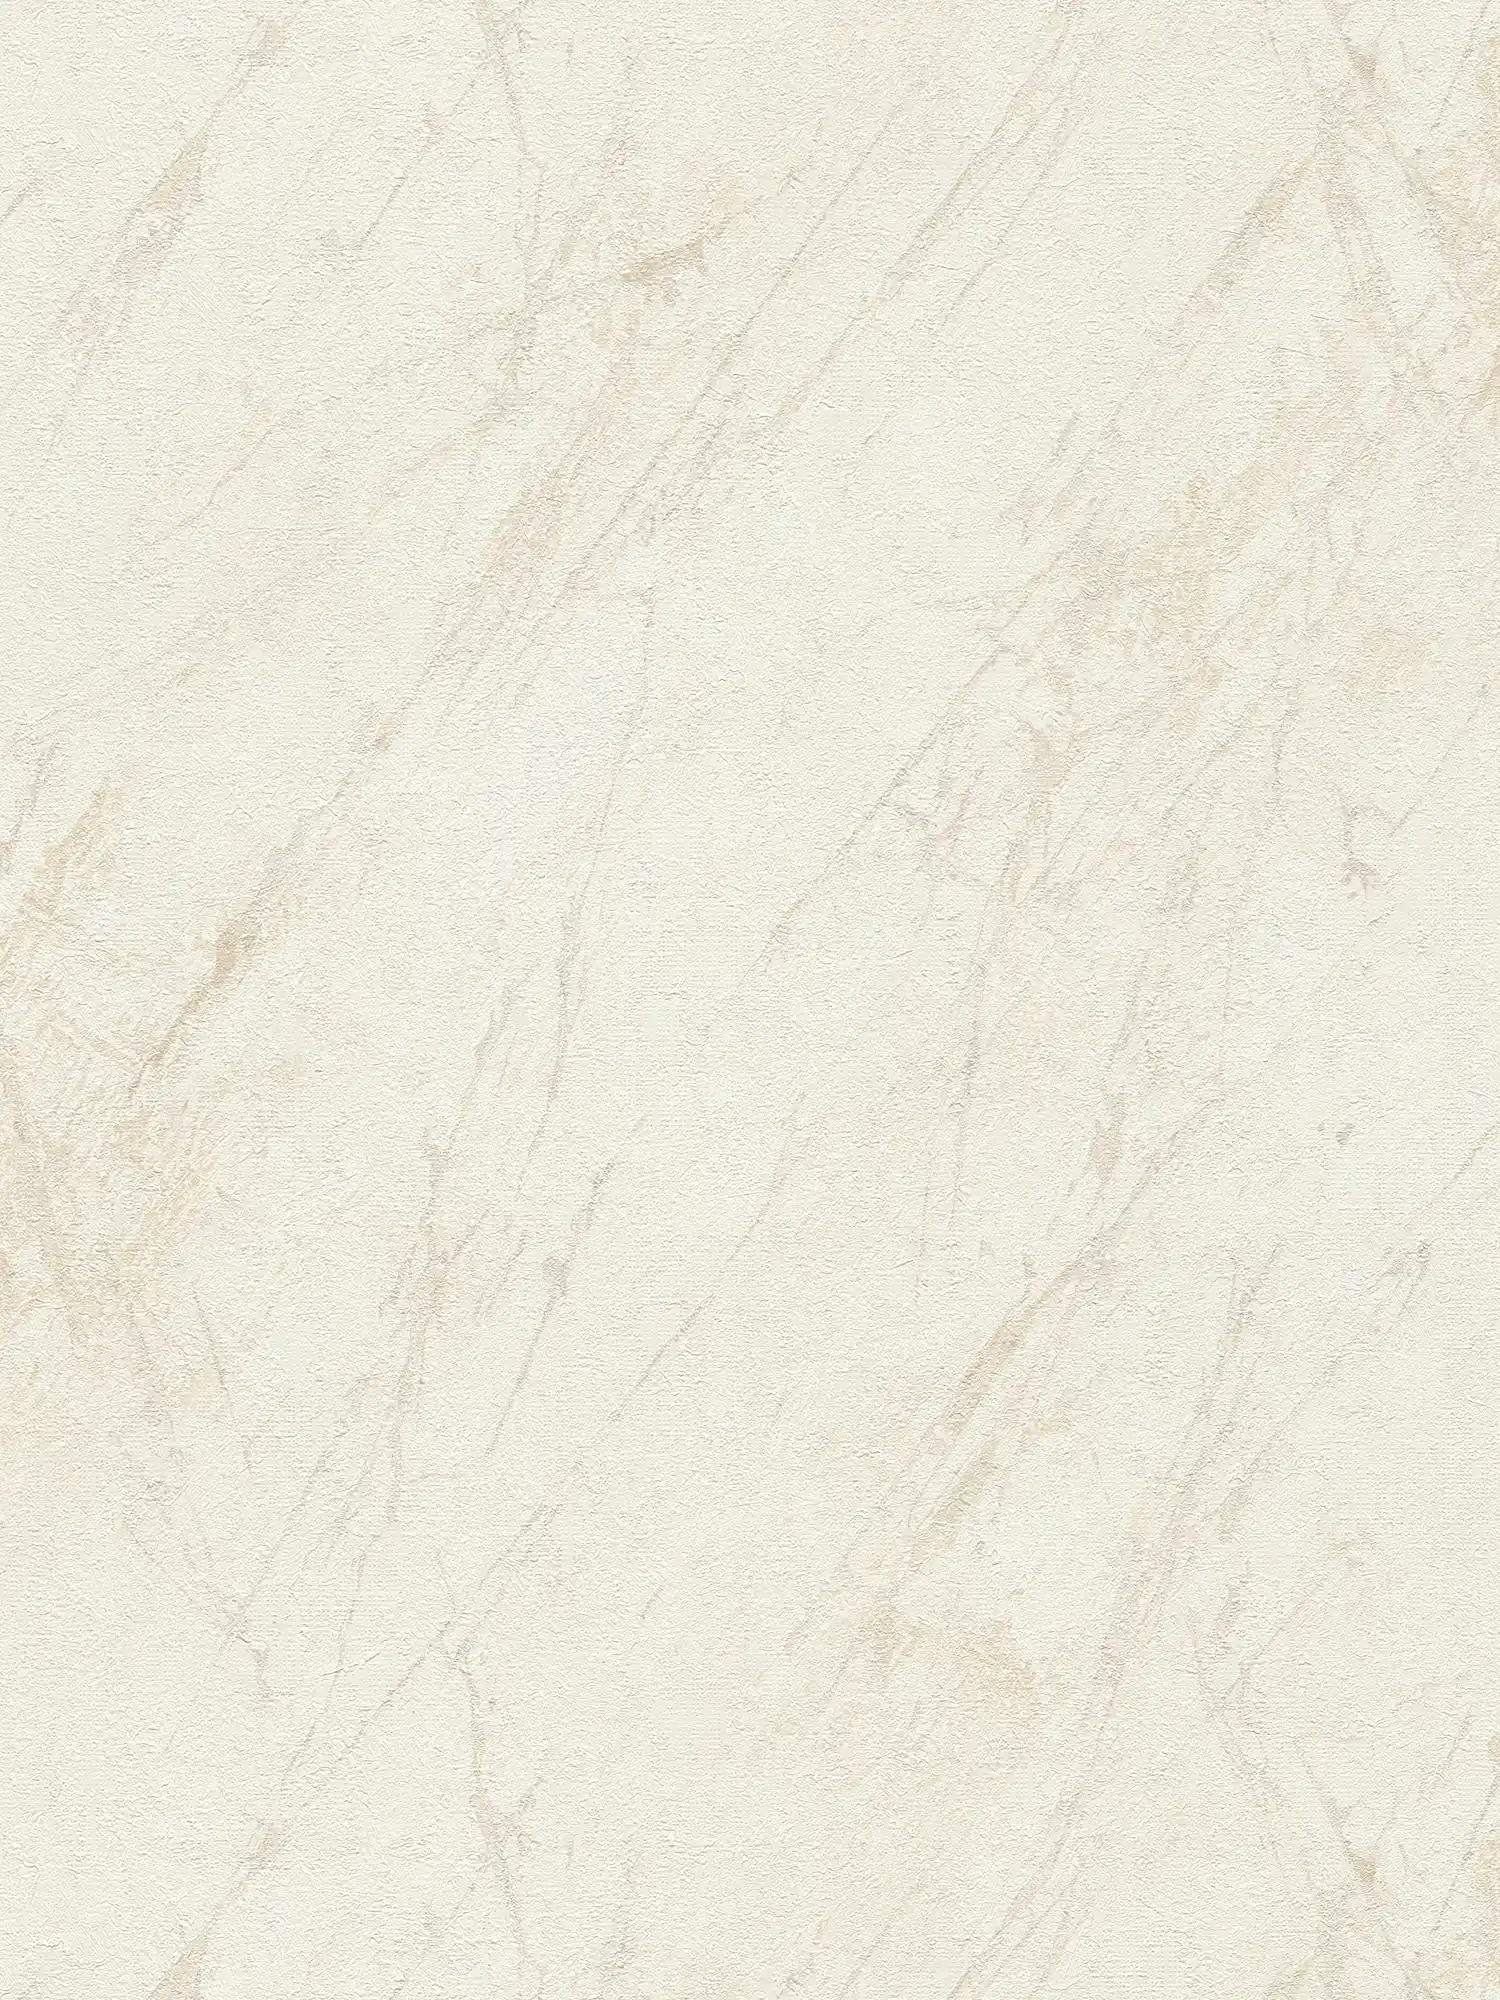 Carta da parati effetto marmo in color crema con disegno della struttura
